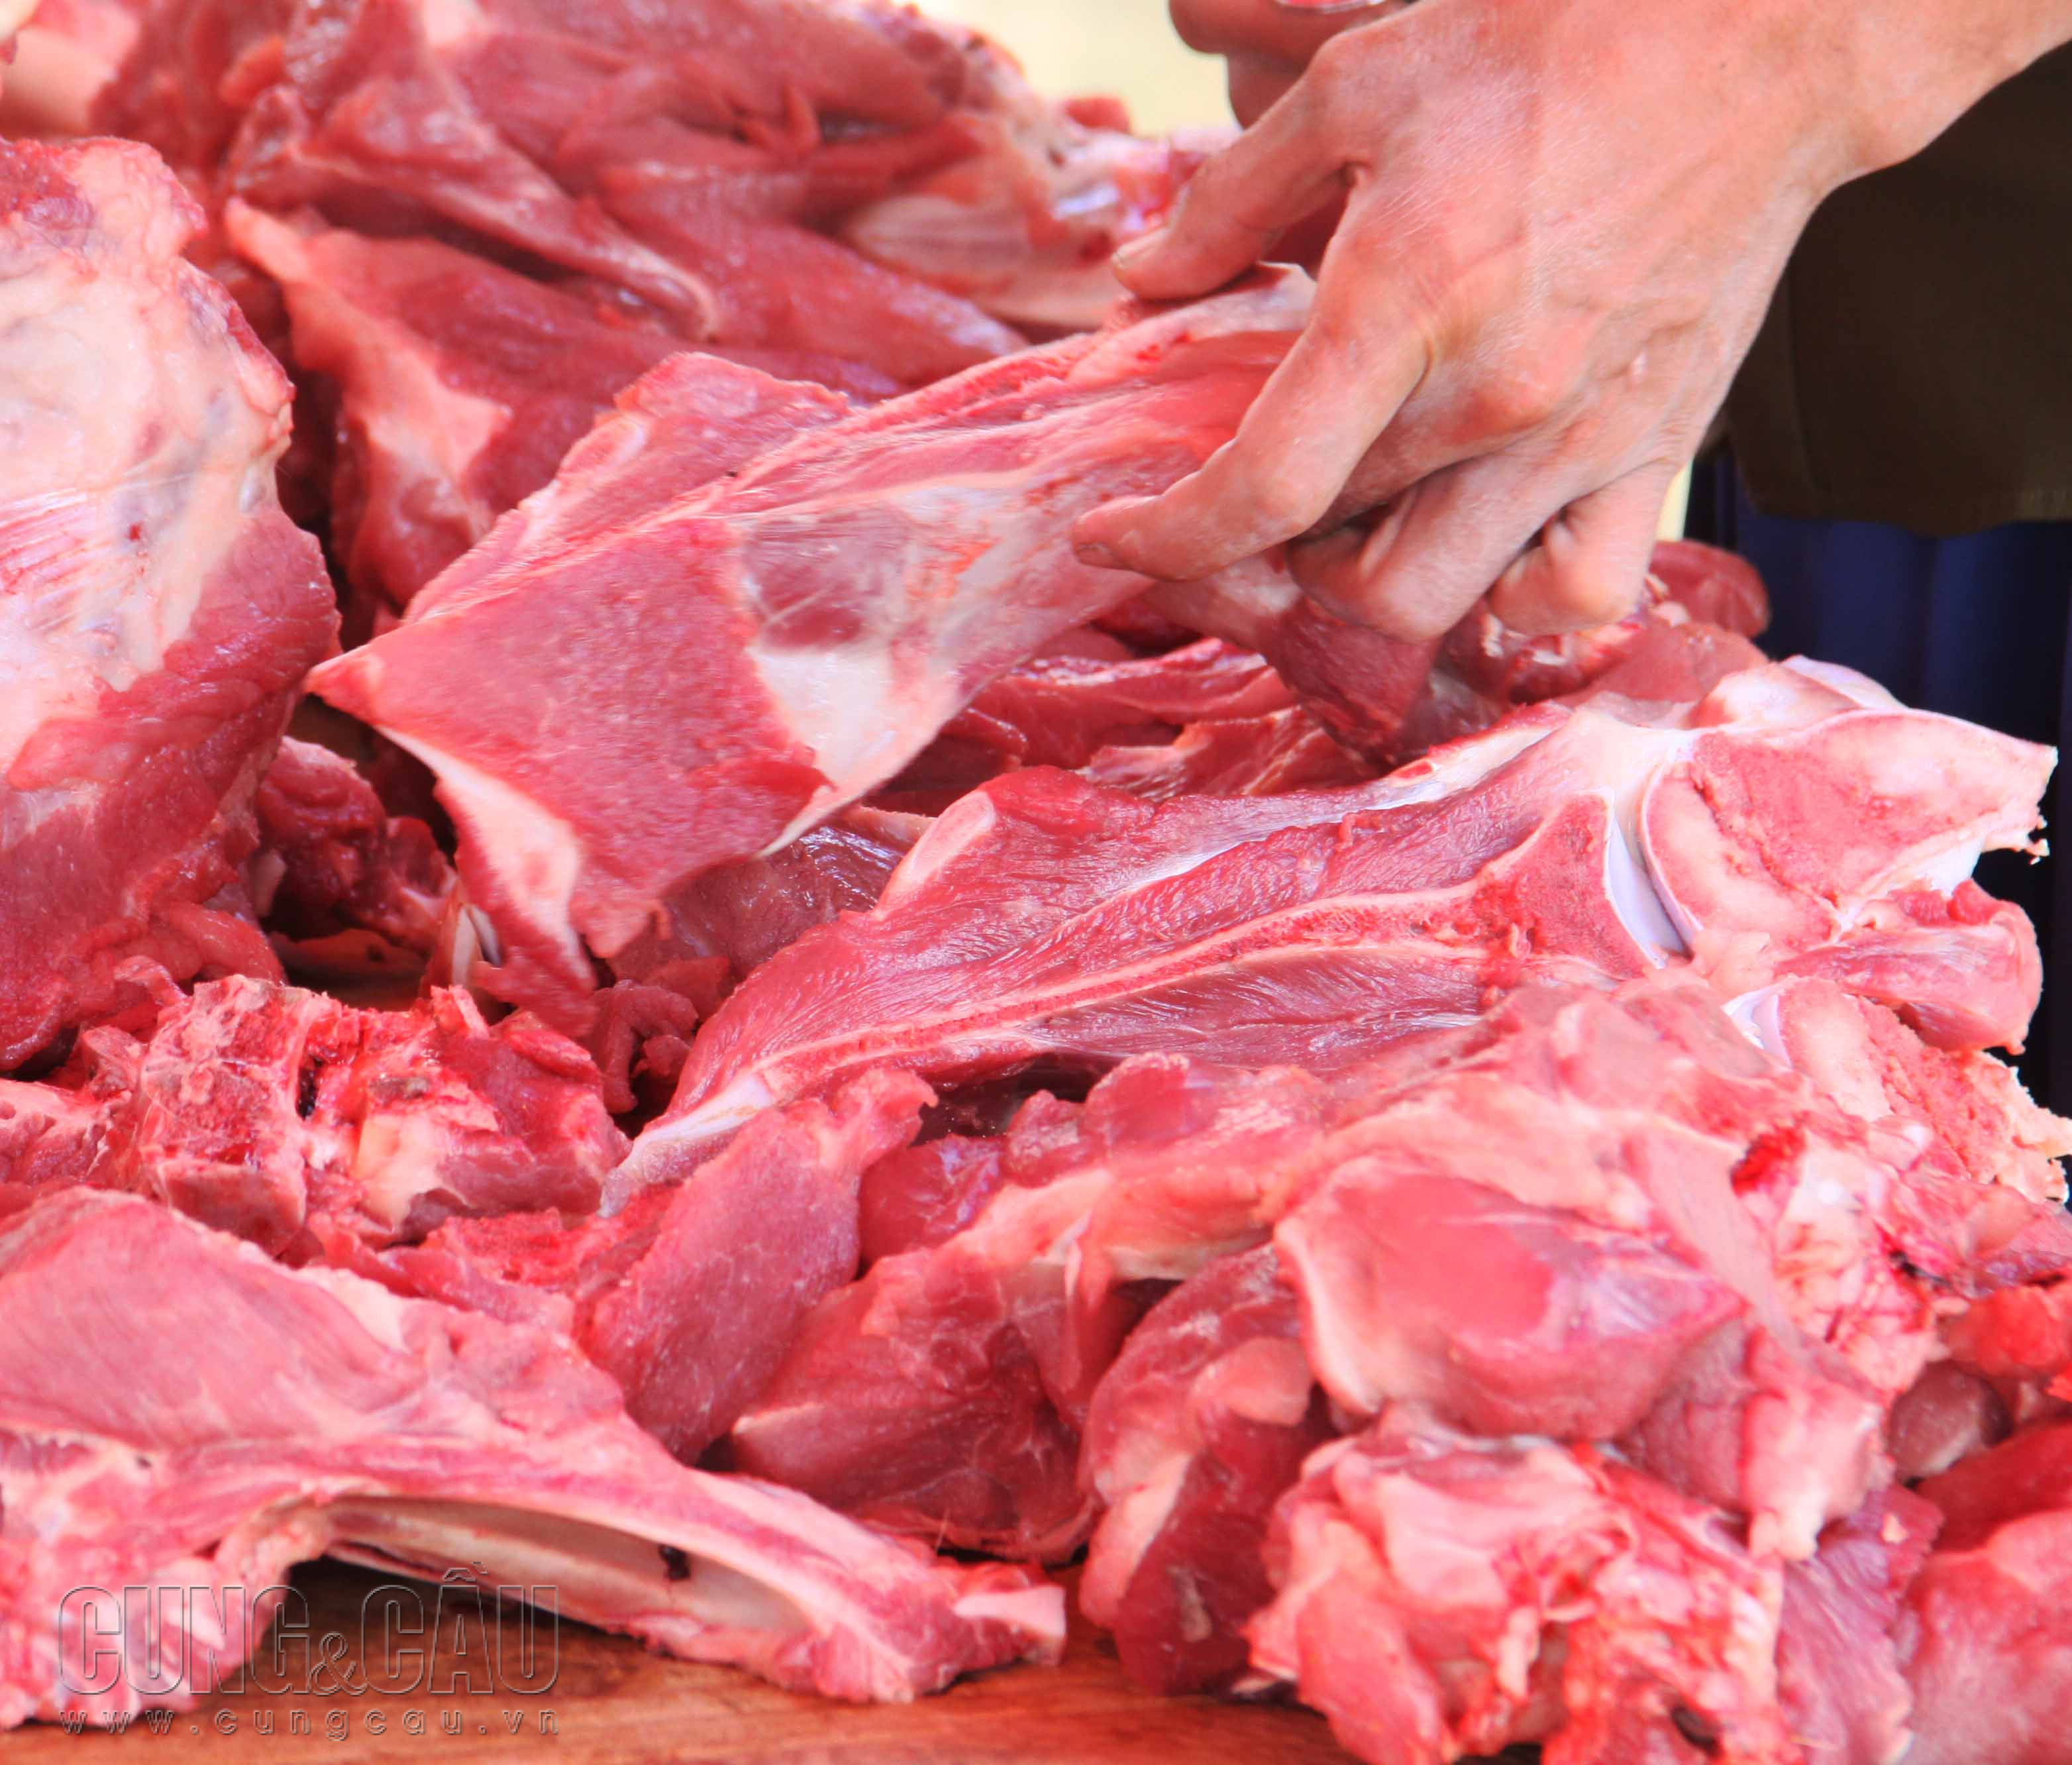 Giá thịt heo bán lẻ được dự báo sẽ tăng mạnh trong những tháng cuối năm.